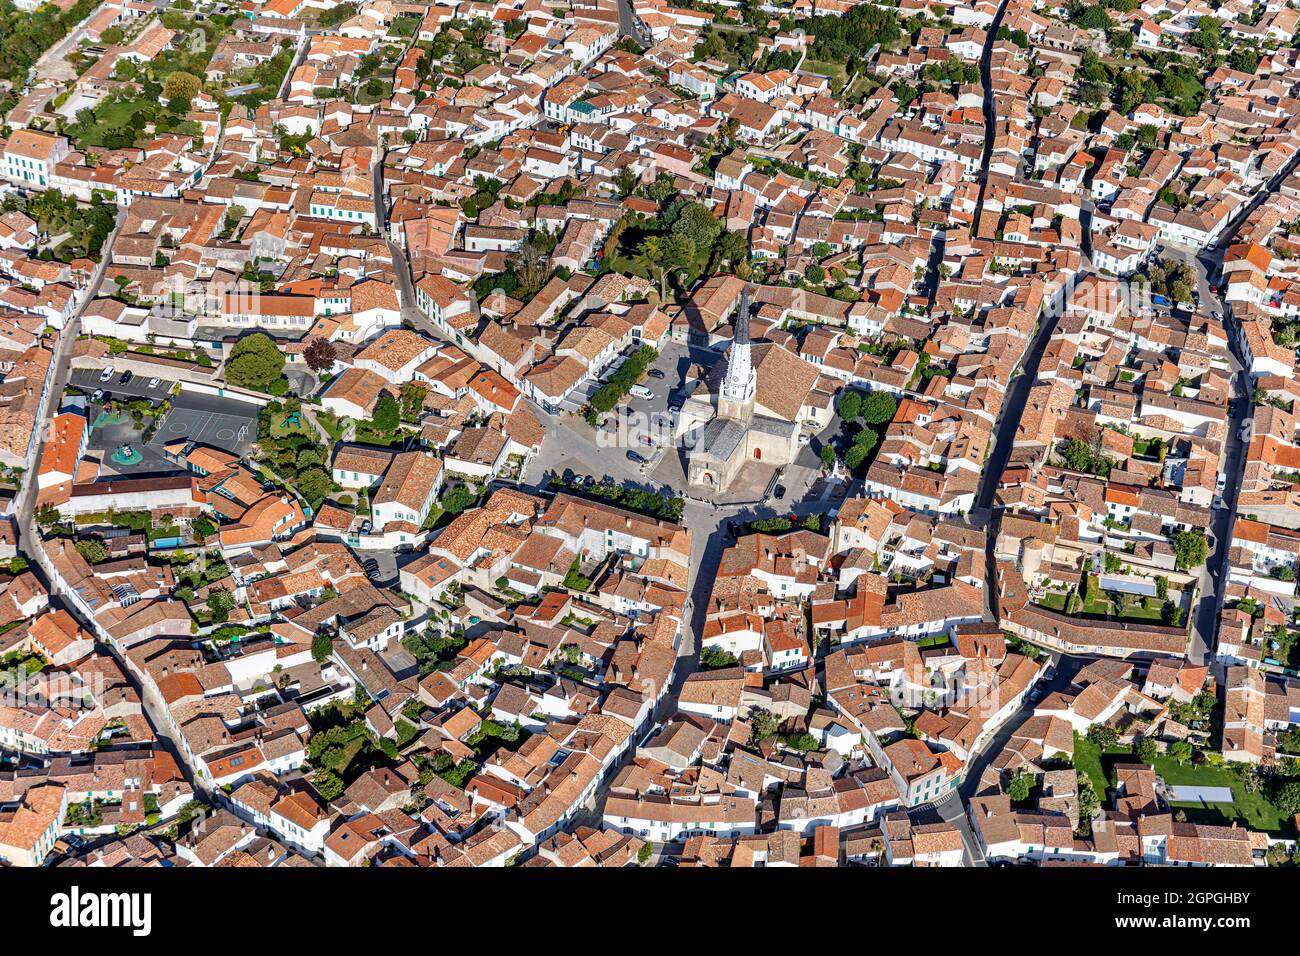 Francia, Charente Maritime, Ars en Re, etichettato Les Plus Beaux Villages de France (i più bei villaggi di Francia), il villaggio (vista aerea) Foto Stock